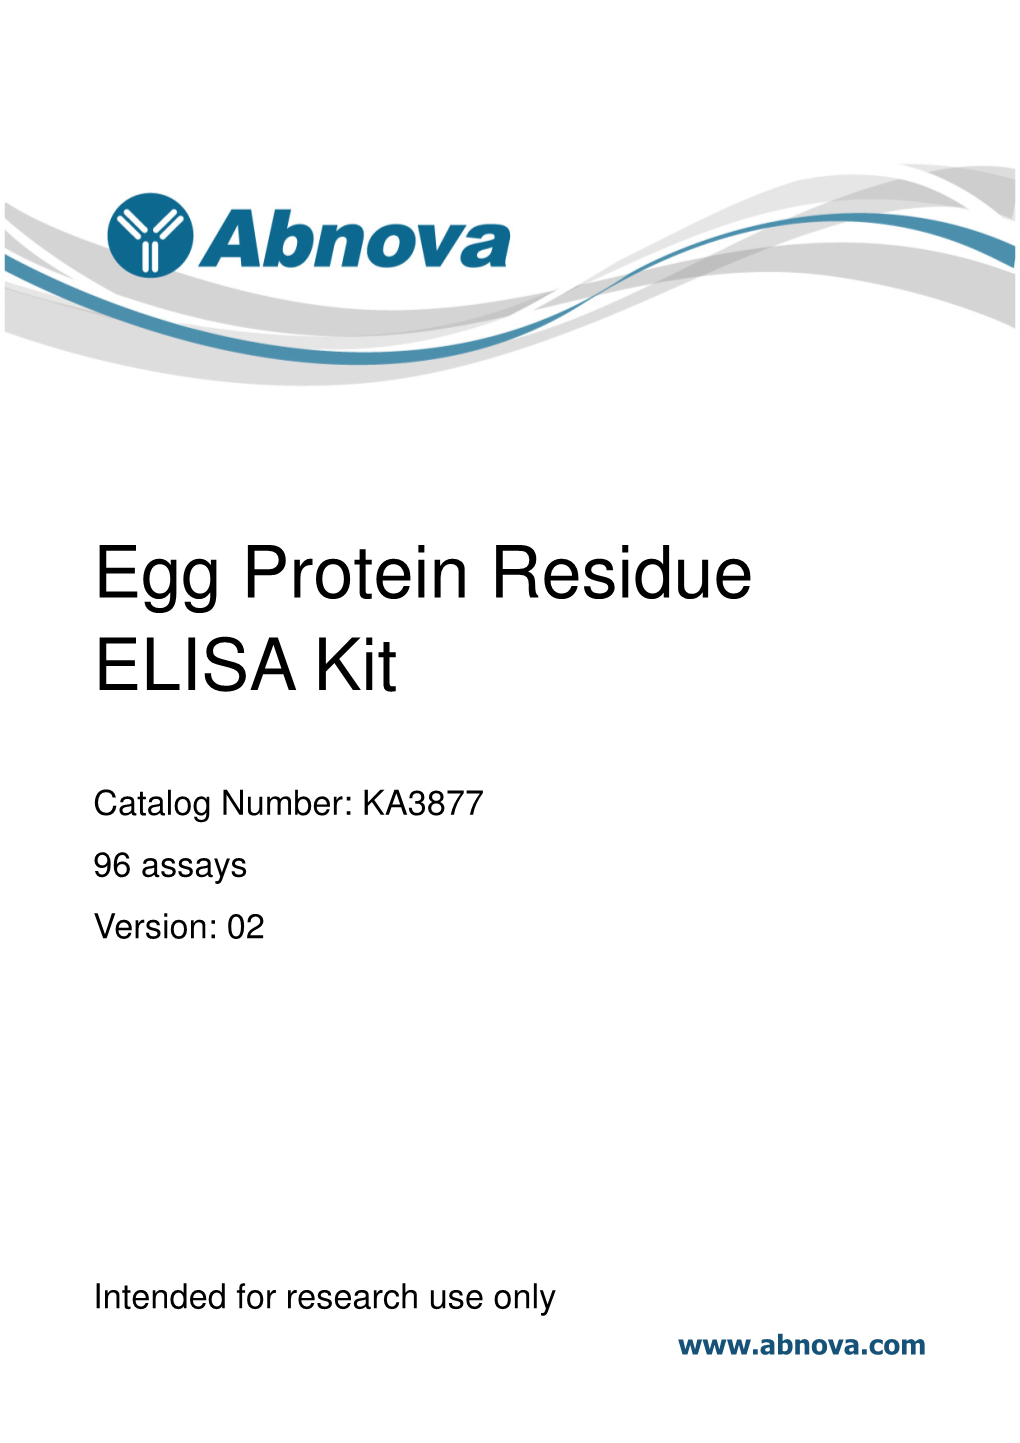 Egg Protein Residue ELISA Kit